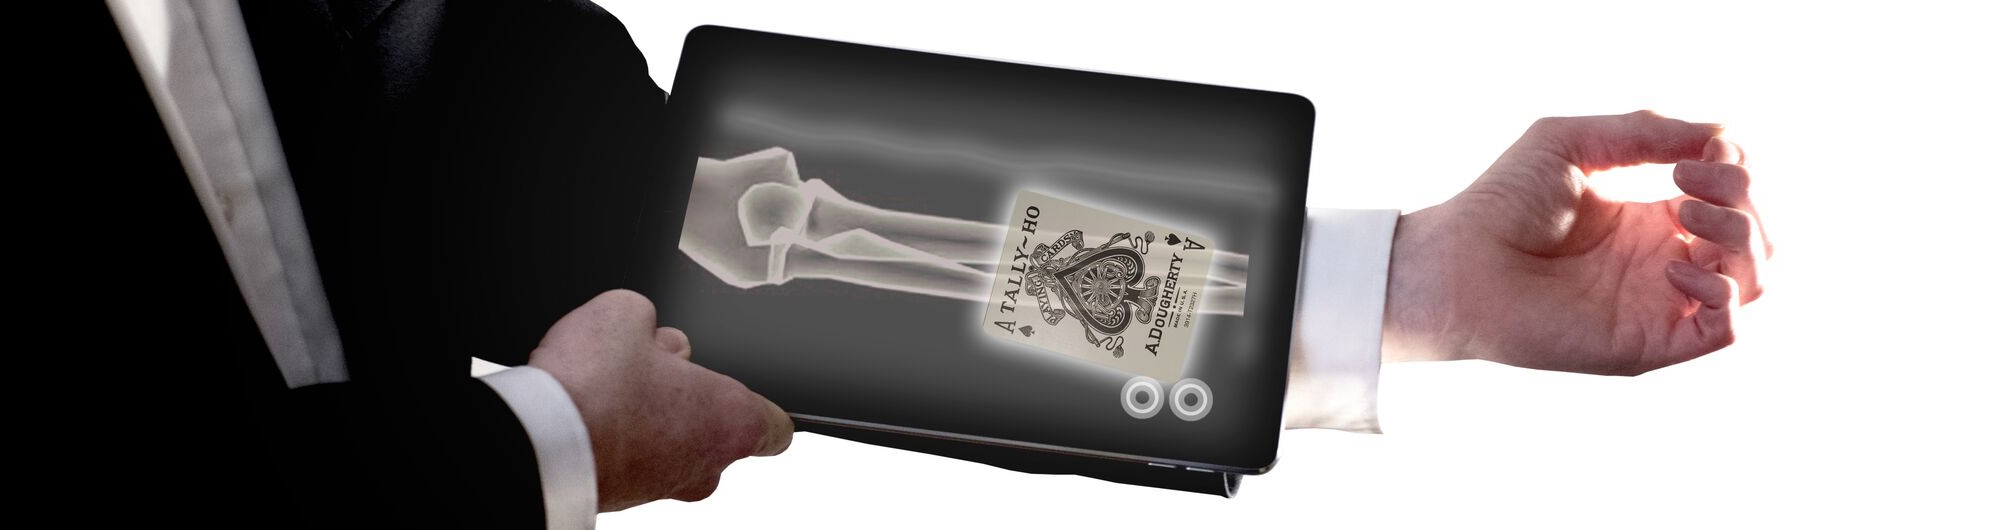 iPad-magician-x-ray